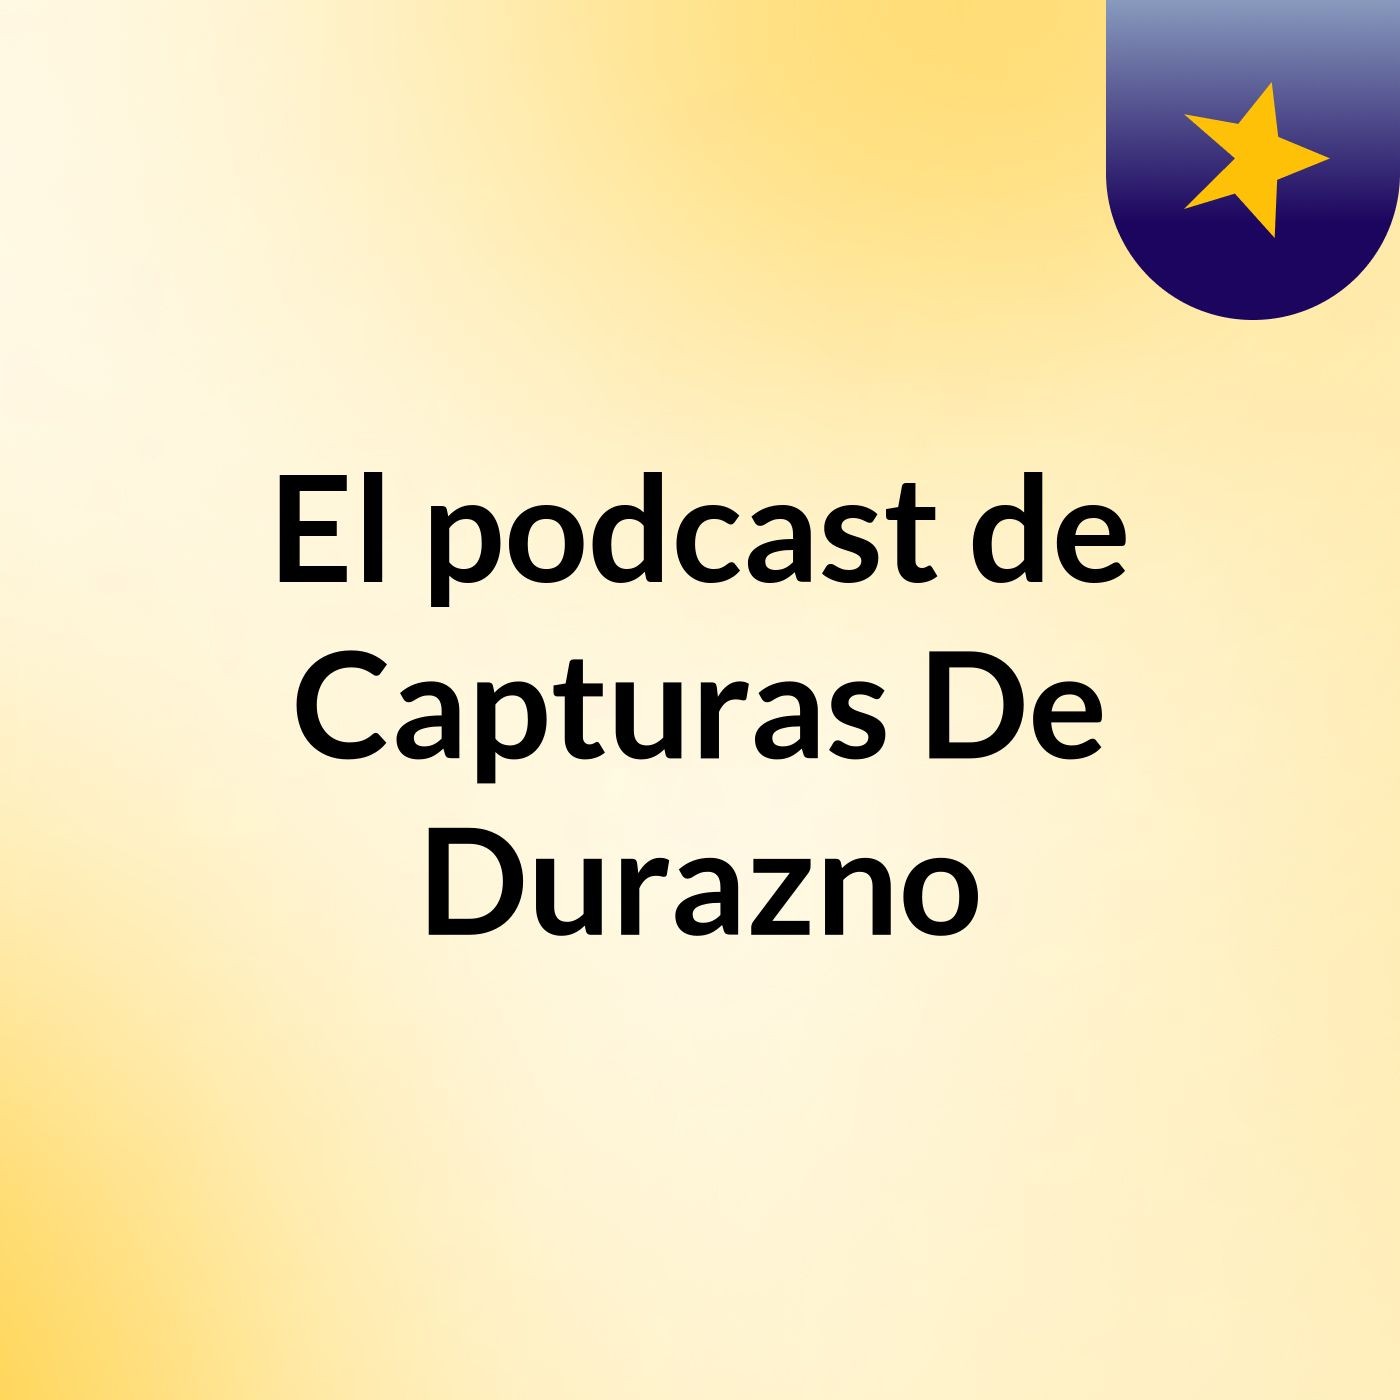 El podcast de Capturas De Durazno